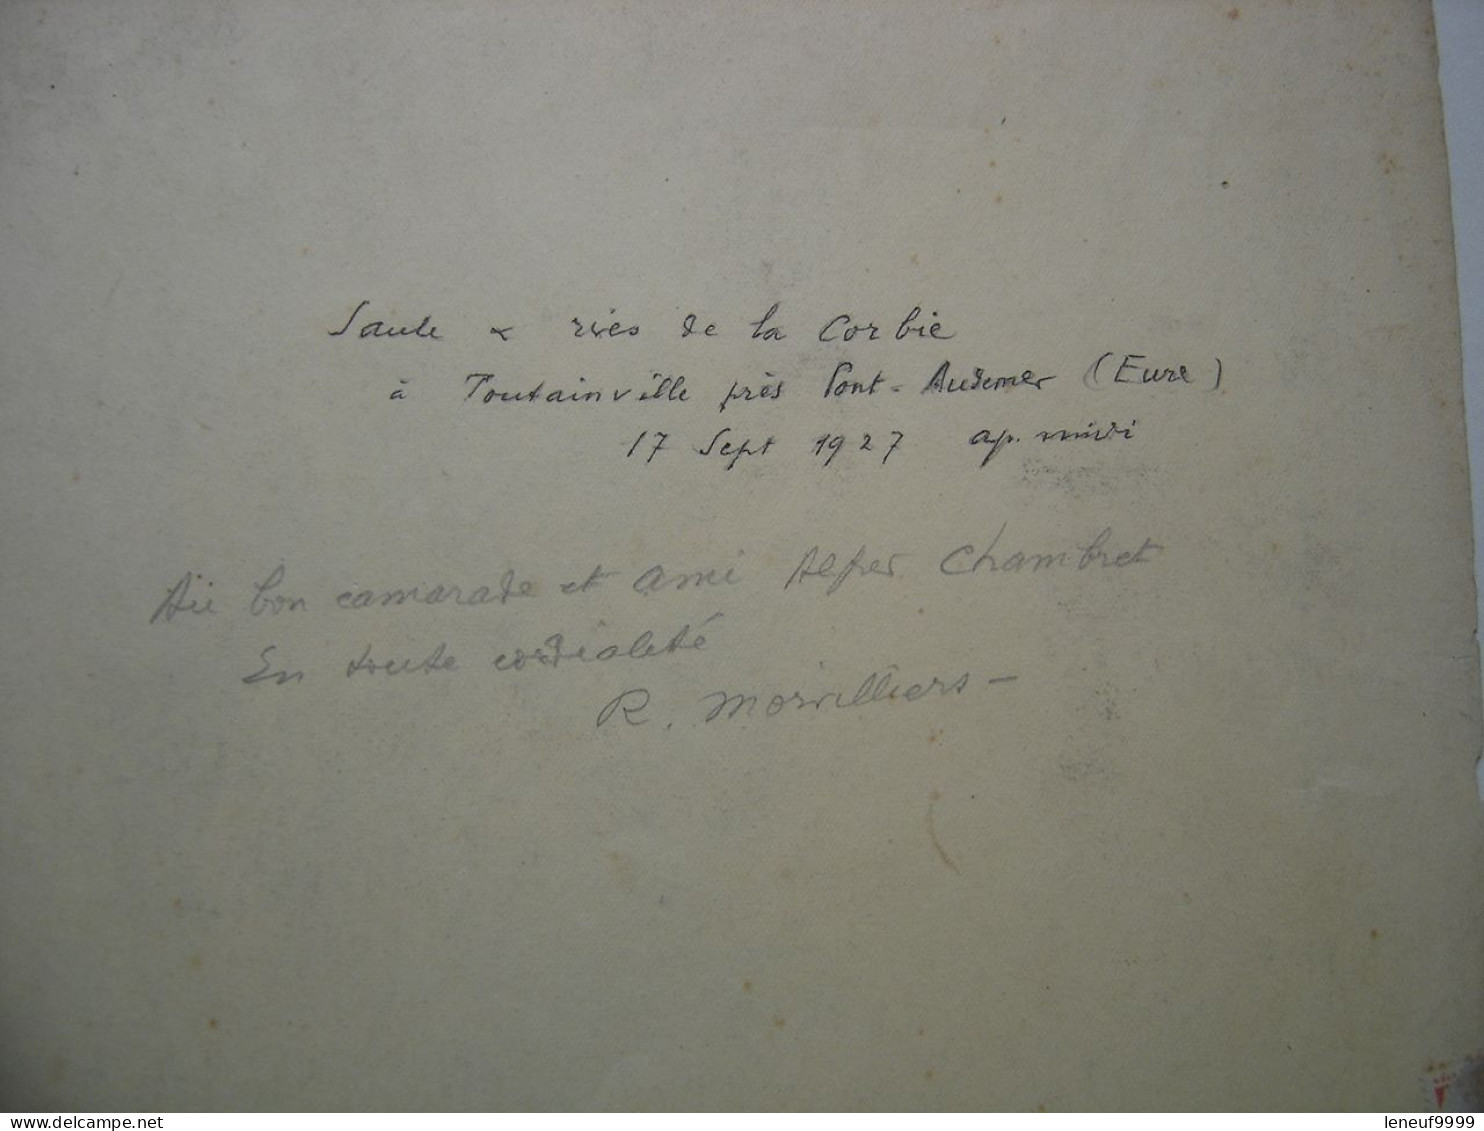 Estampe Signee Et Dedicacee R MORVILLIERS 1927 Situee Dans L'Eure Corbie Toutainville - Zeitgenössische Kunst